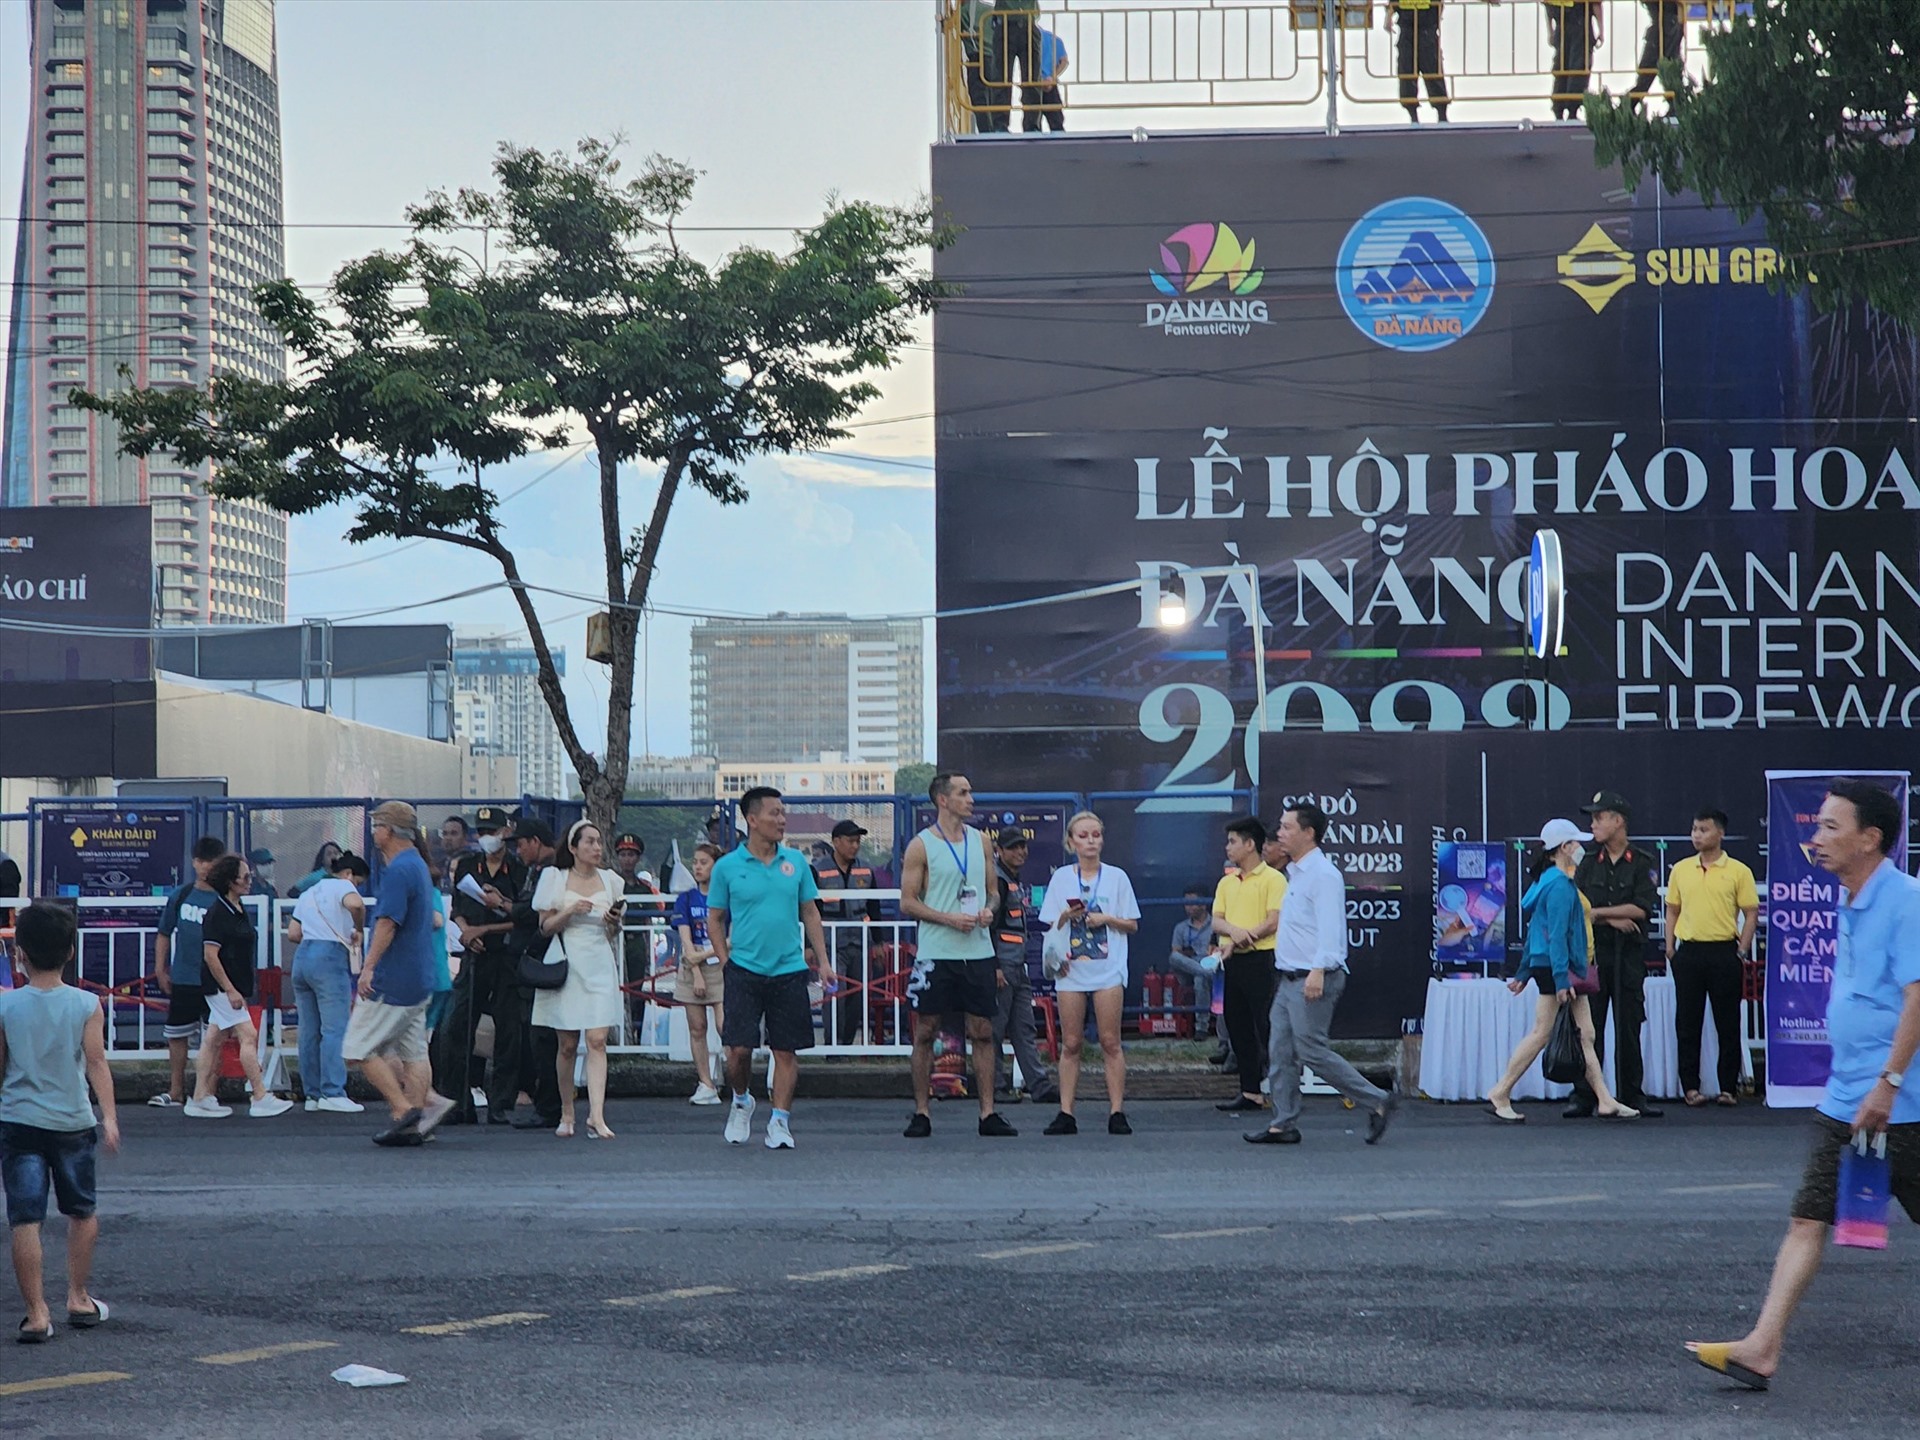 Đêm chung kết pháo hoa quốc tế Đà Nẵng được tổ chức vào đêm 8.7 dự kiến thu hút 65.000 khán giả đến xem trực tiếp. Ảnh: Thùy Trang 